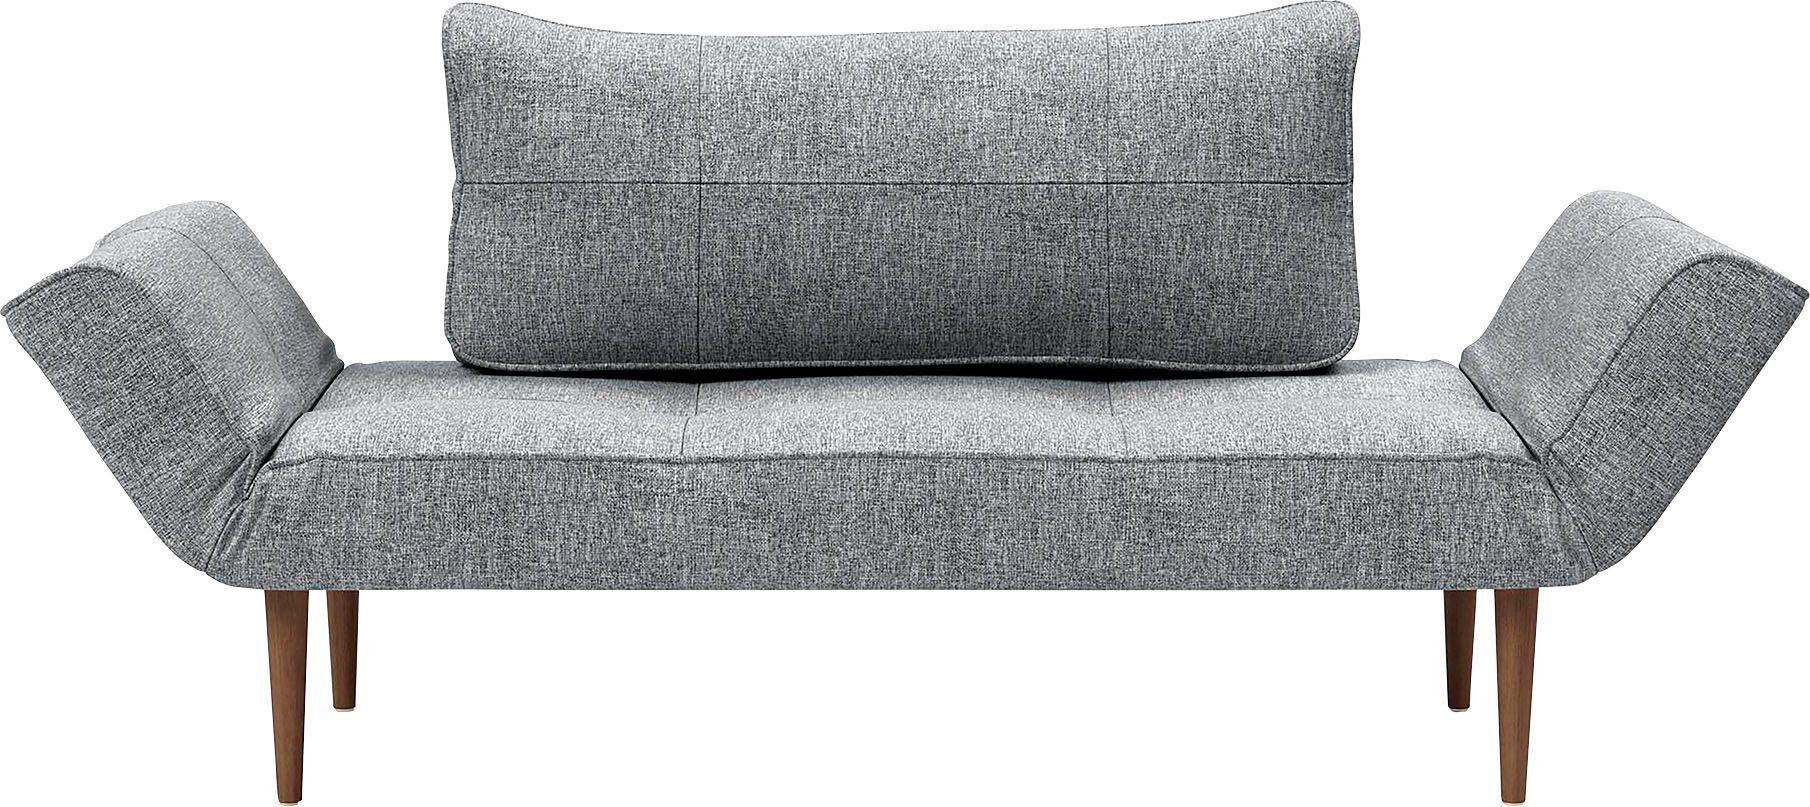 INNOVATION LIVING ™ Schlafsofa Zeal, im Scandinavian Design, Styletto Beine, inklusive Rückenkissen granite | granite